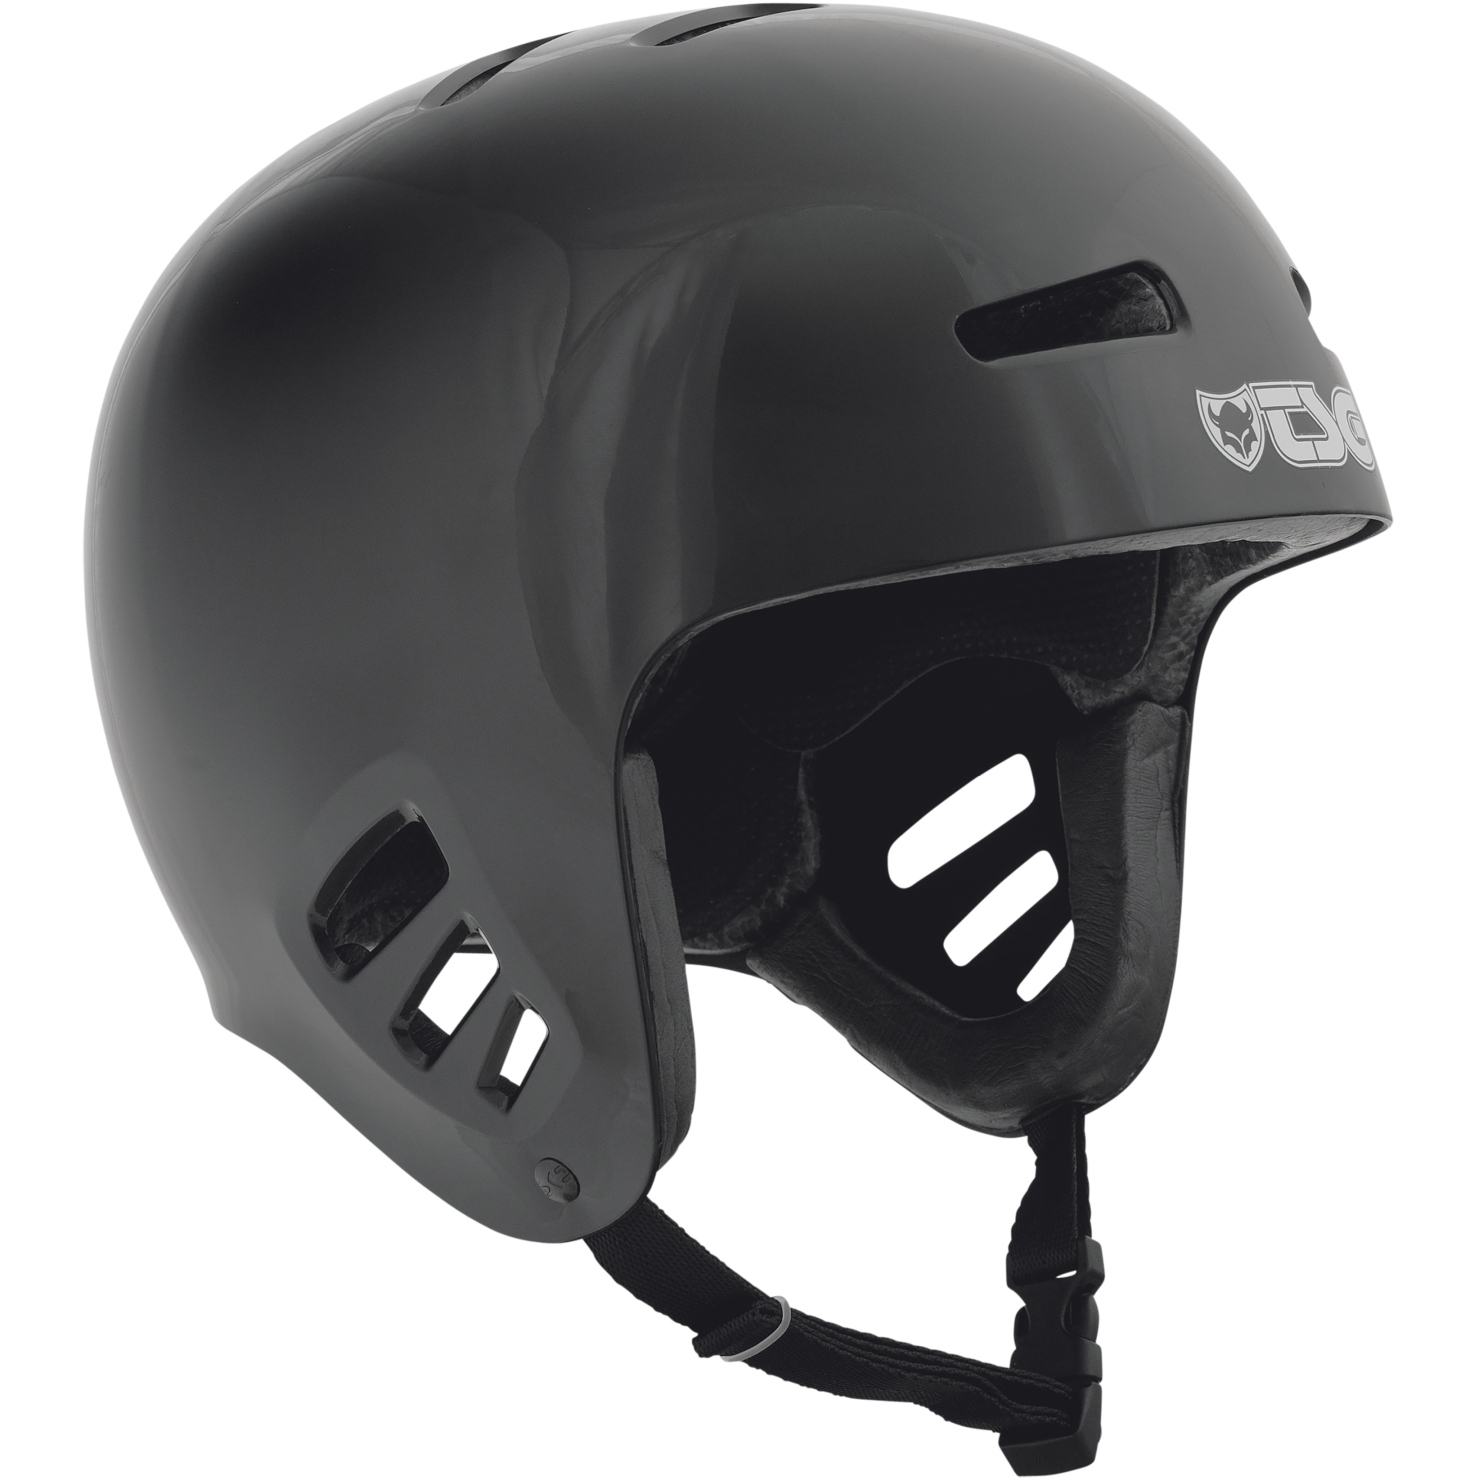 Produktbild von TSG Dawn Solid Color Helm - schwarz